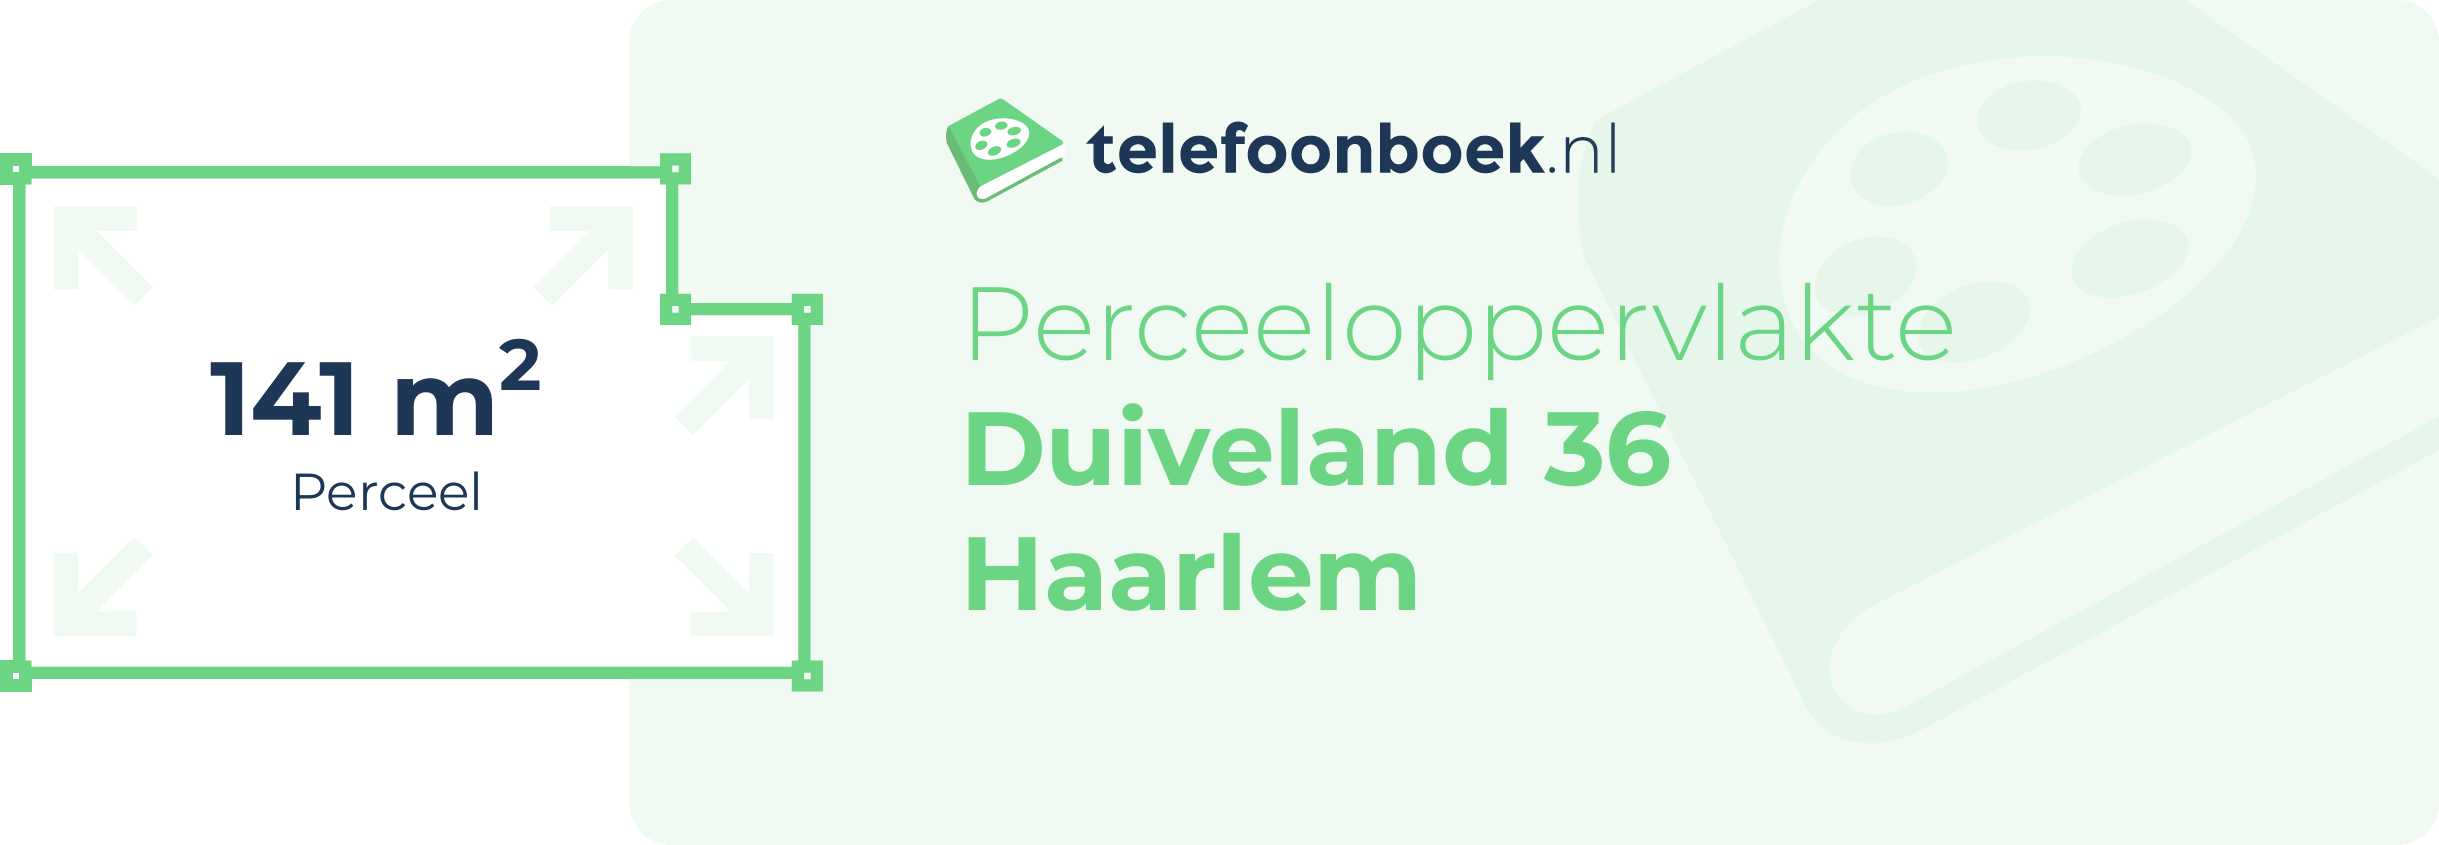 Perceeloppervlakte Duiveland 36 Haarlem